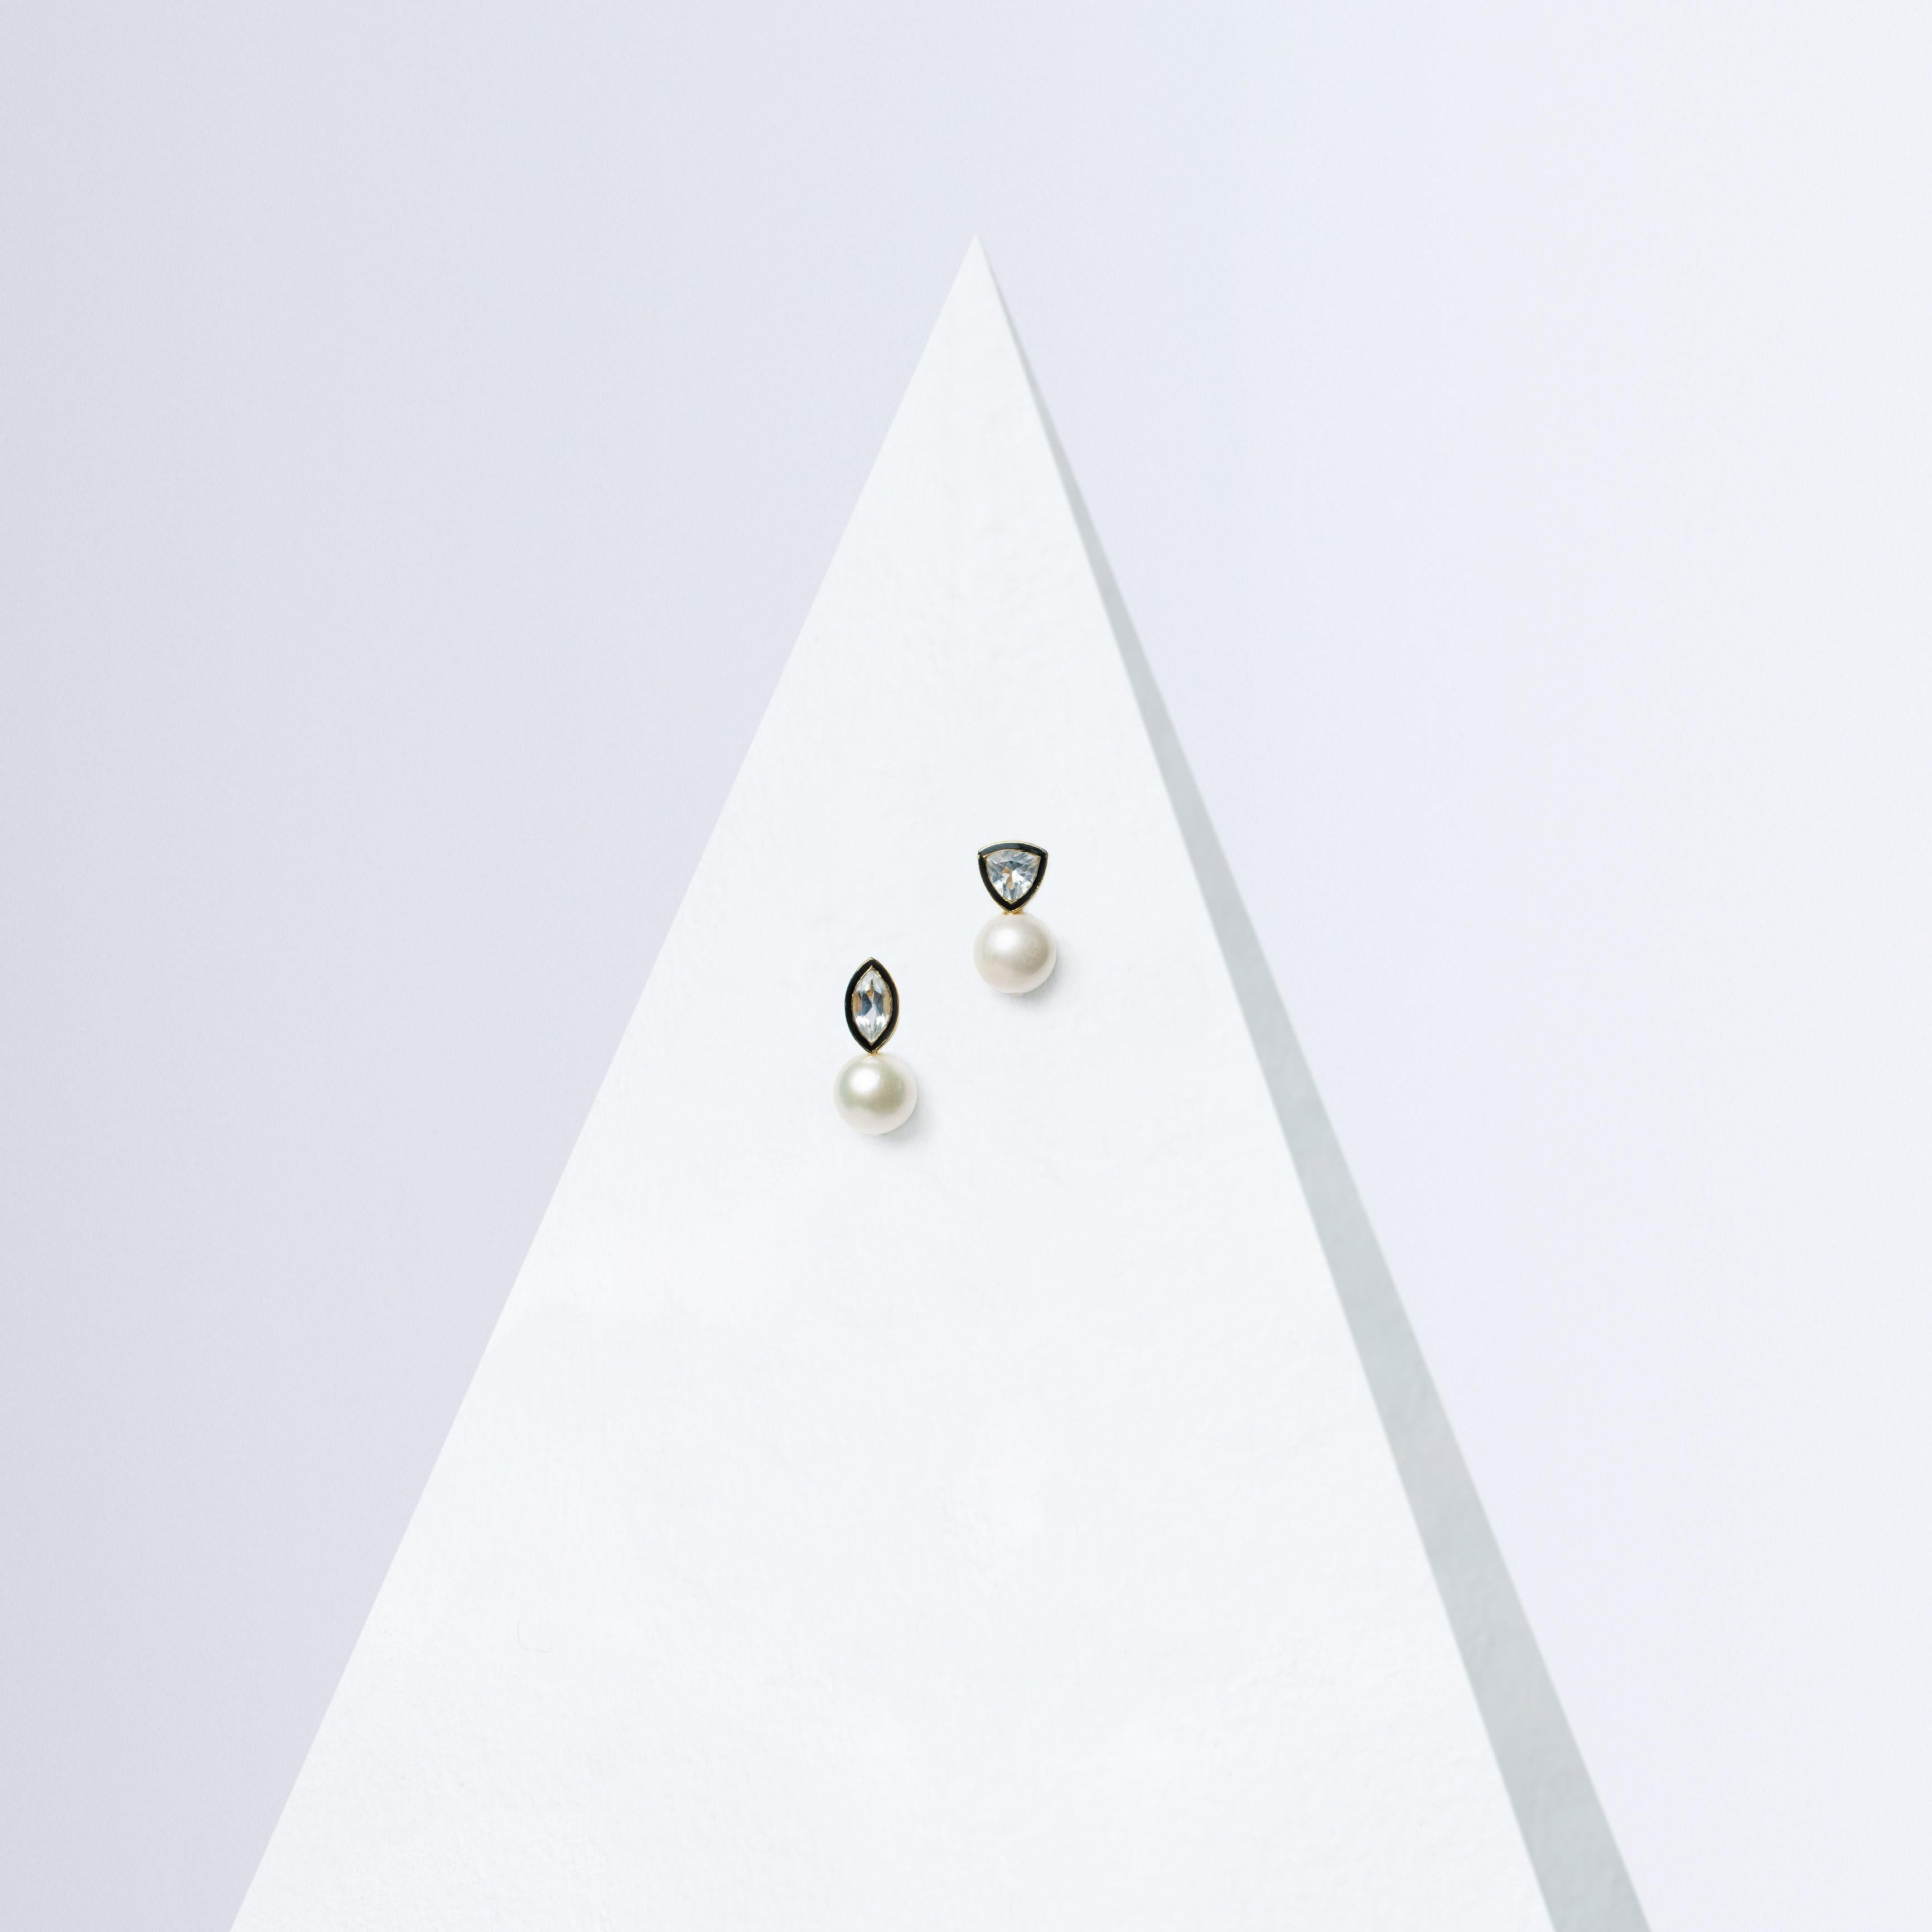 Die Vizcaya-Ohrringe sind eine luxuriöse Ode an die Eleganz des Art Déco. Die schillernden weißen Topas-Steine mit einem Gewicht zwischen 1,10 und 1,25 Karat sind in kühnen Marquise- und Dreiecksschliffen gefasst und setzen ein modernes Statement.